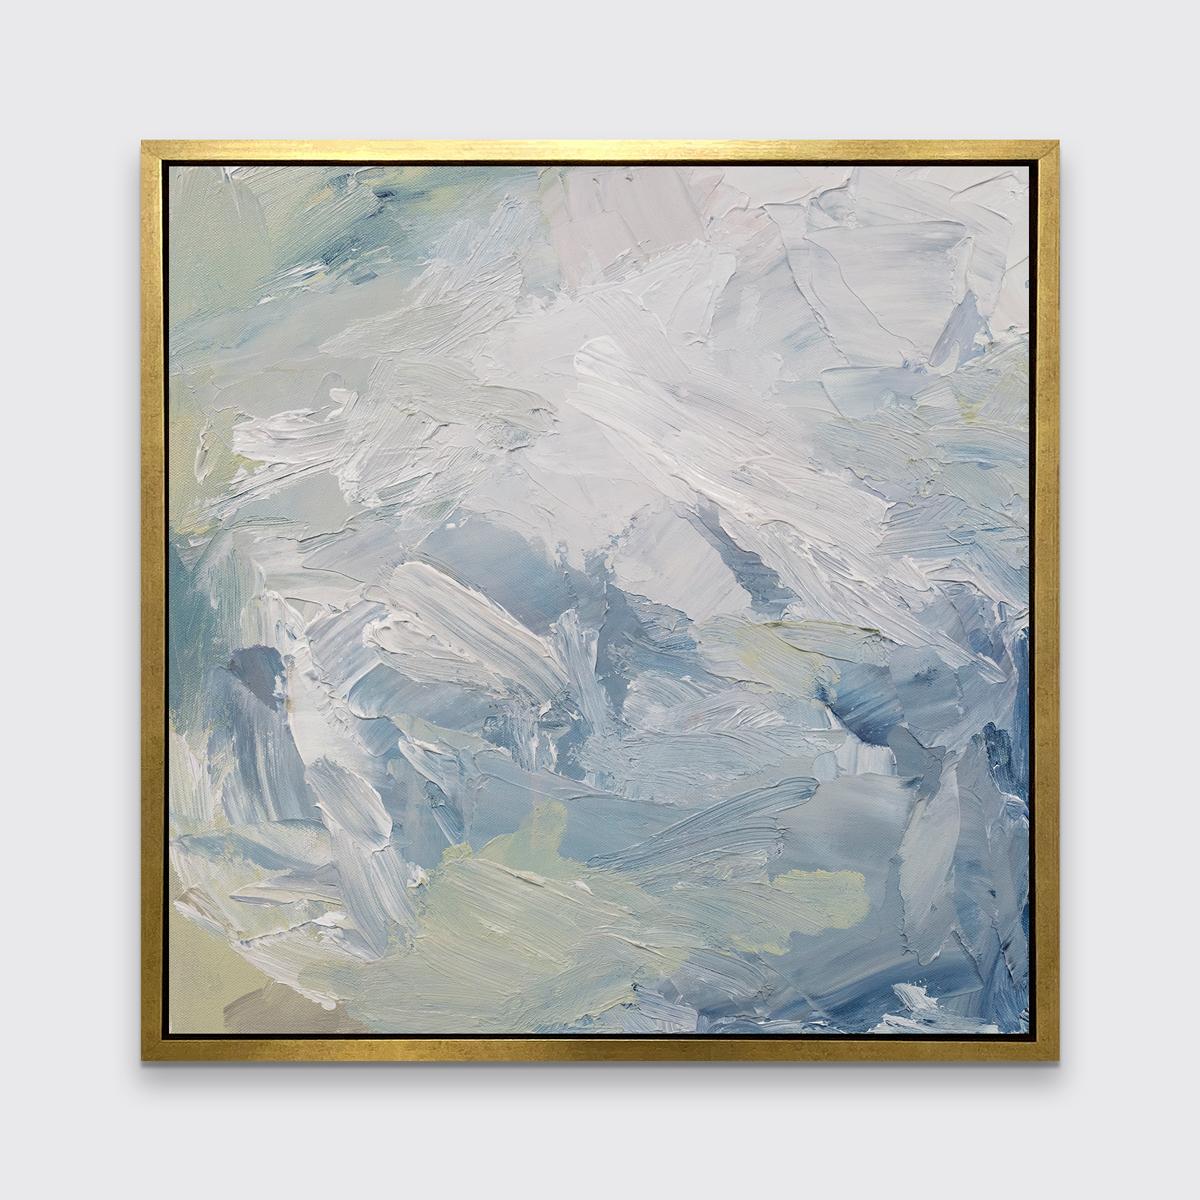 Cette estampe abstraite en édition limitée de l'artiste contemporaine Teodora Guererra présente une palette froide de bleu, de blanc et de vert sourd, avec des traits énergiques tout au long de la composition. Ce tirage s'associe magnifiquement à